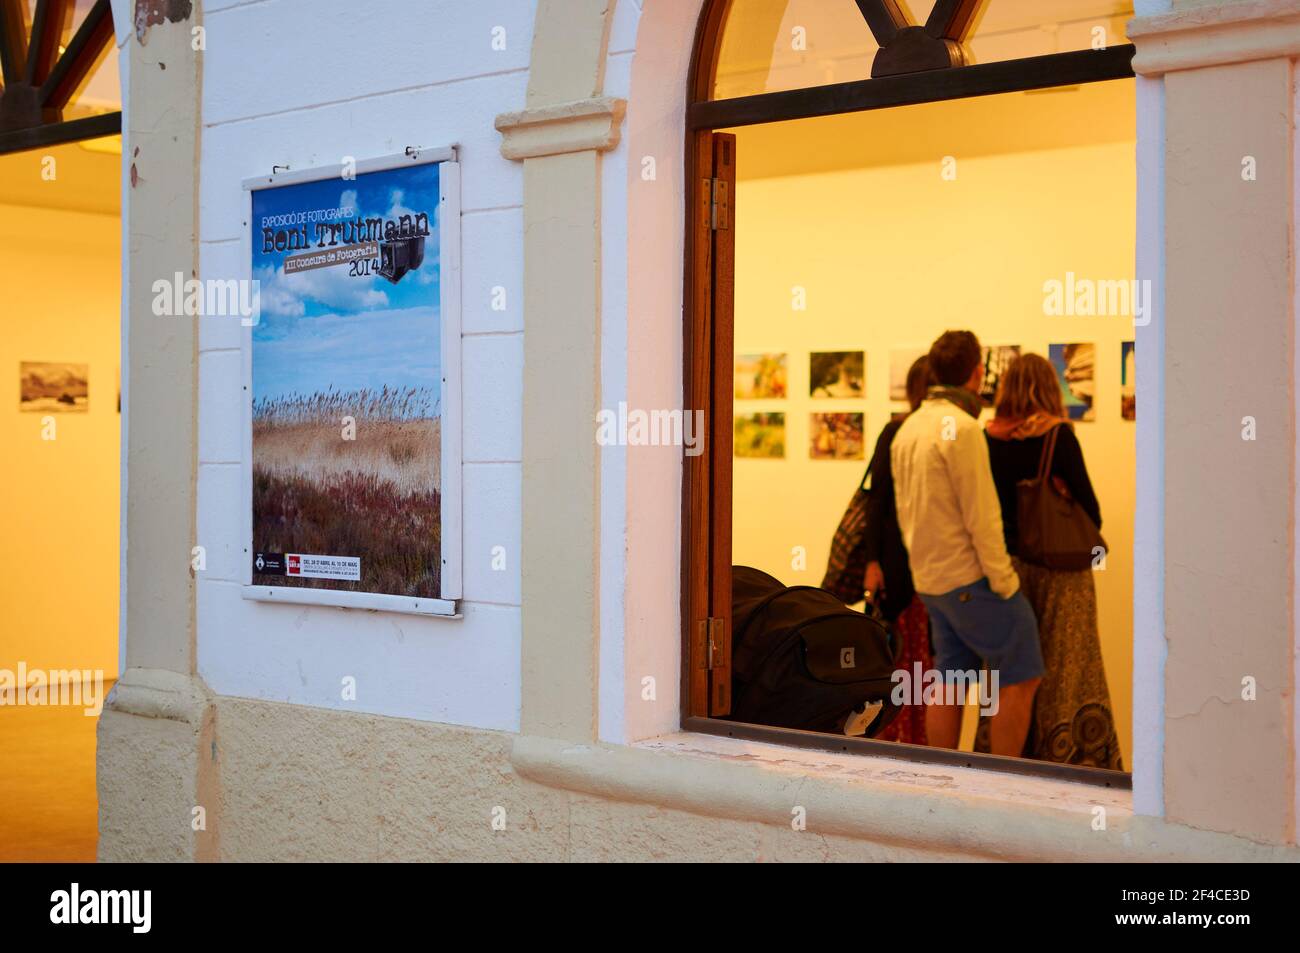 Attaquantes à la cérémonie de remise des prix du concours photo Beni Trutmann à l'exposition photo (Ajuntament Vell, Sant Francesc Xavier, Formentera, Espagne) Banque D'Images